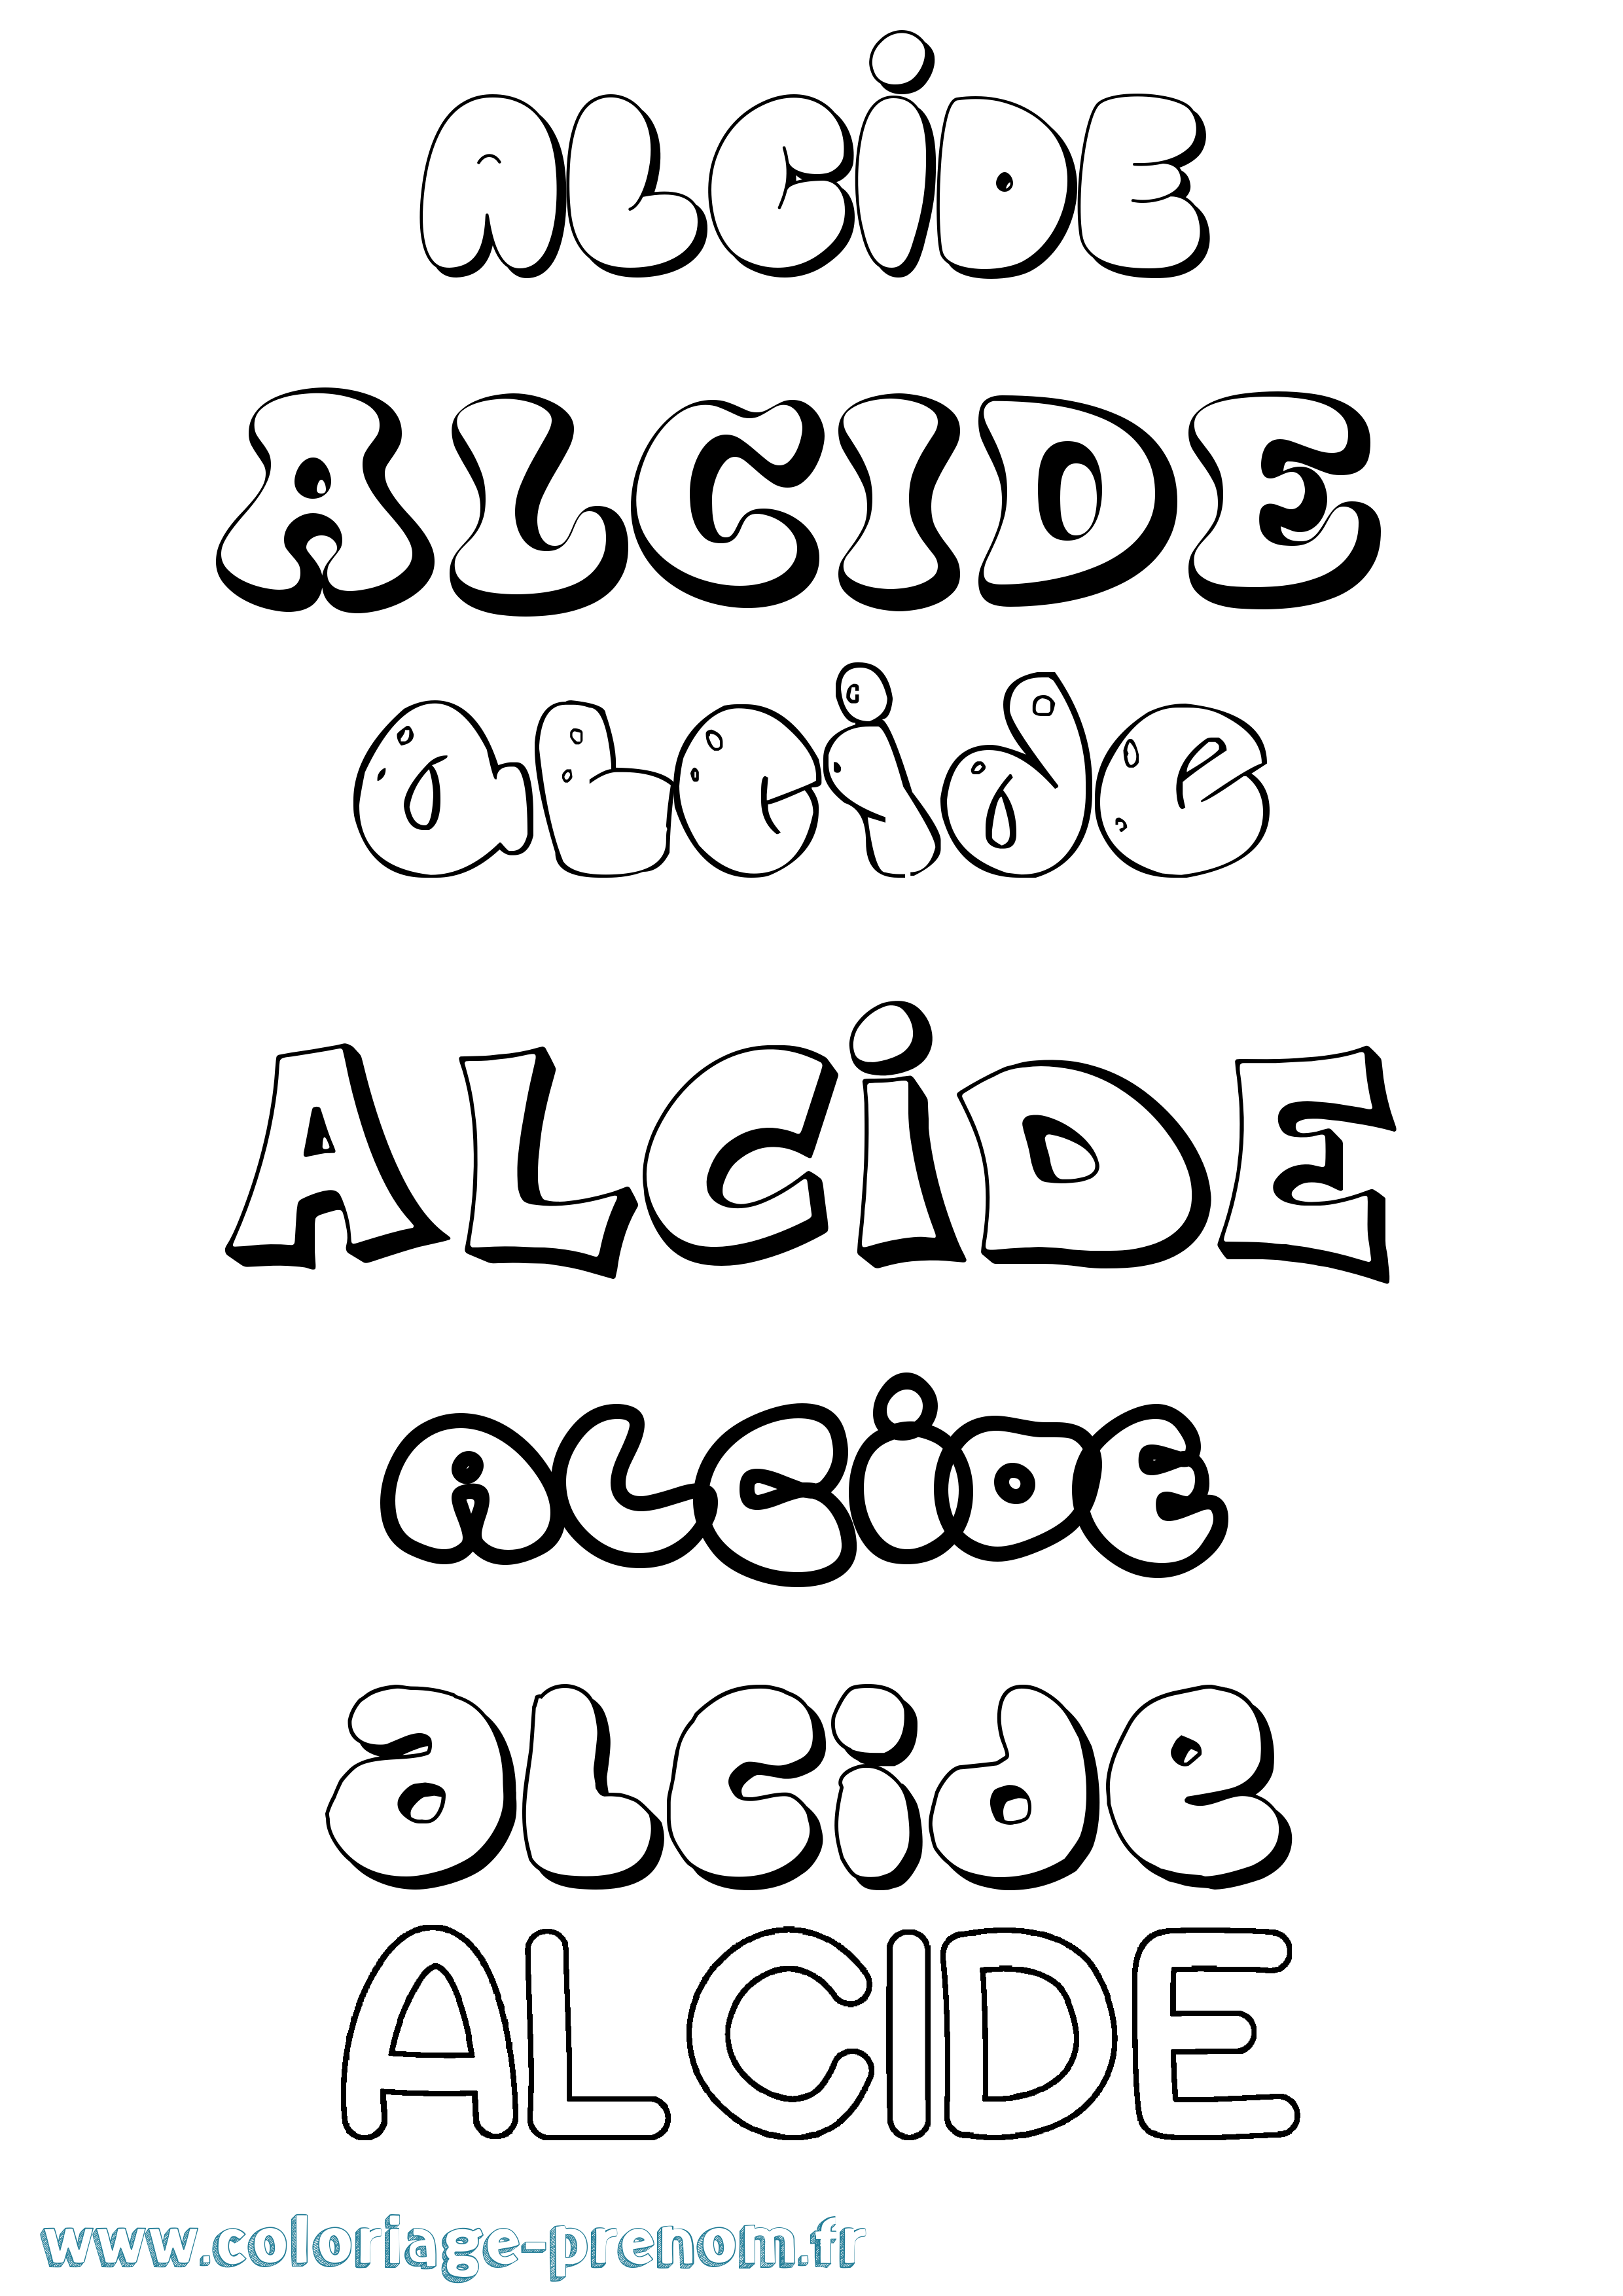 Coloriage prénom Alcide Bubble